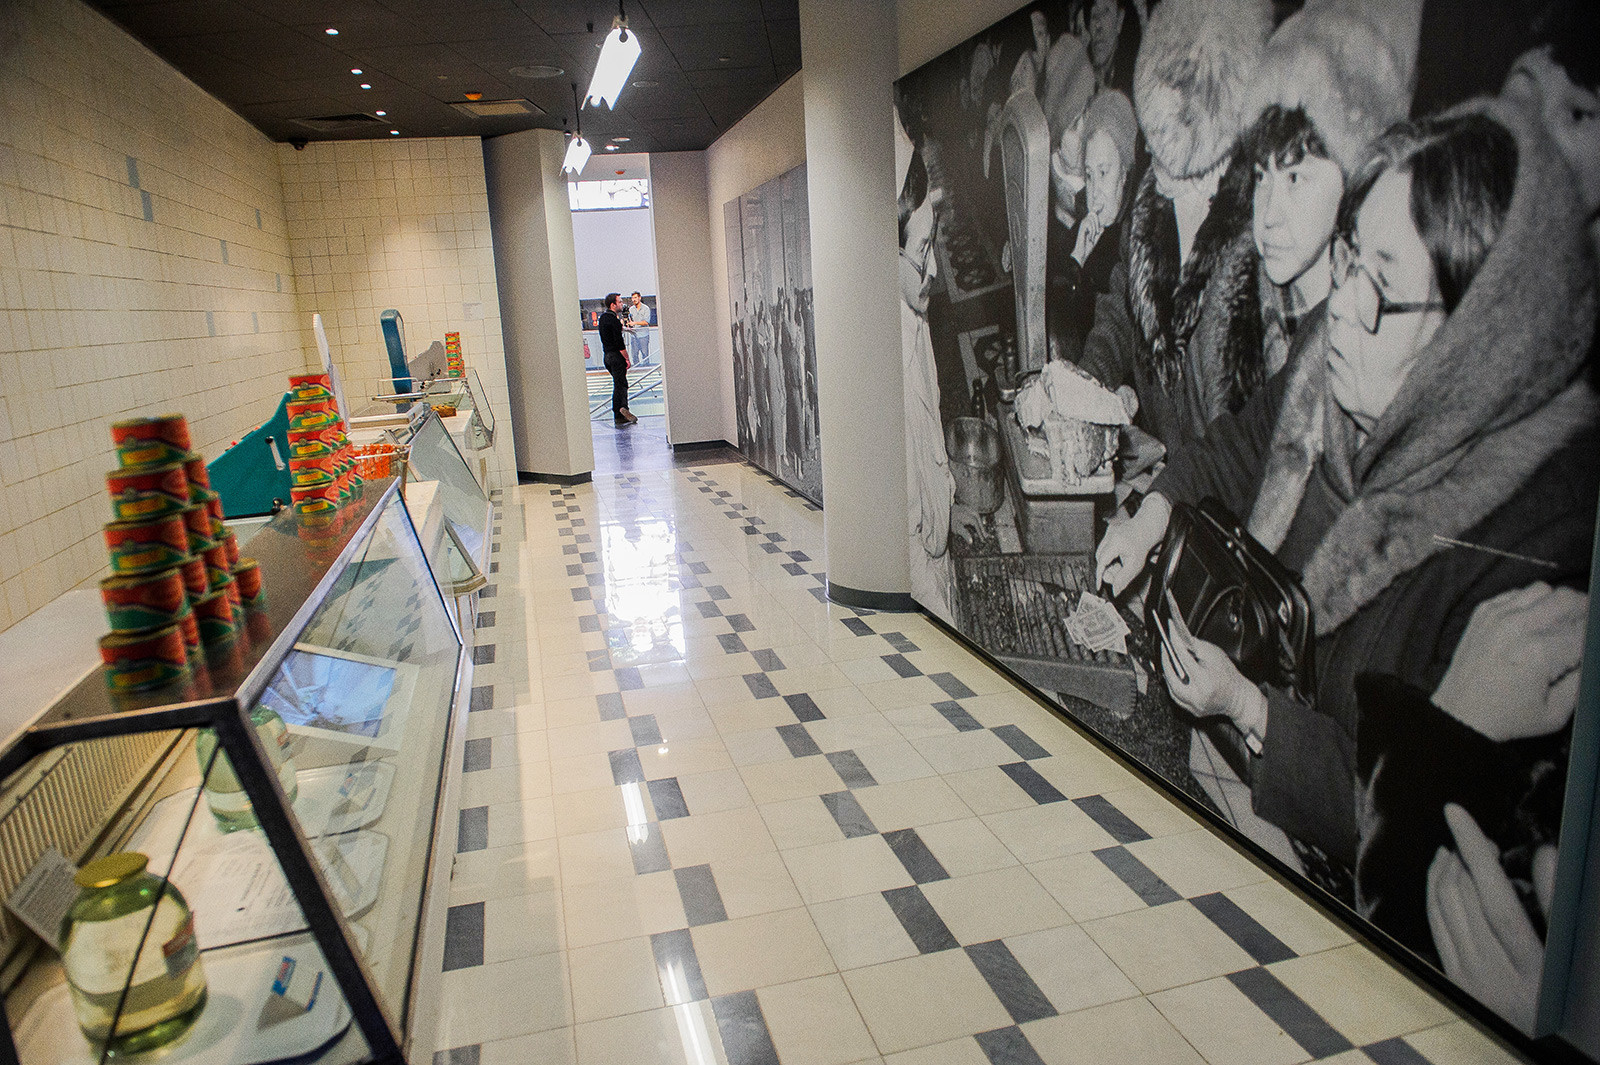 Prazne trgovinske police kot del razstave v Jelcin centru.